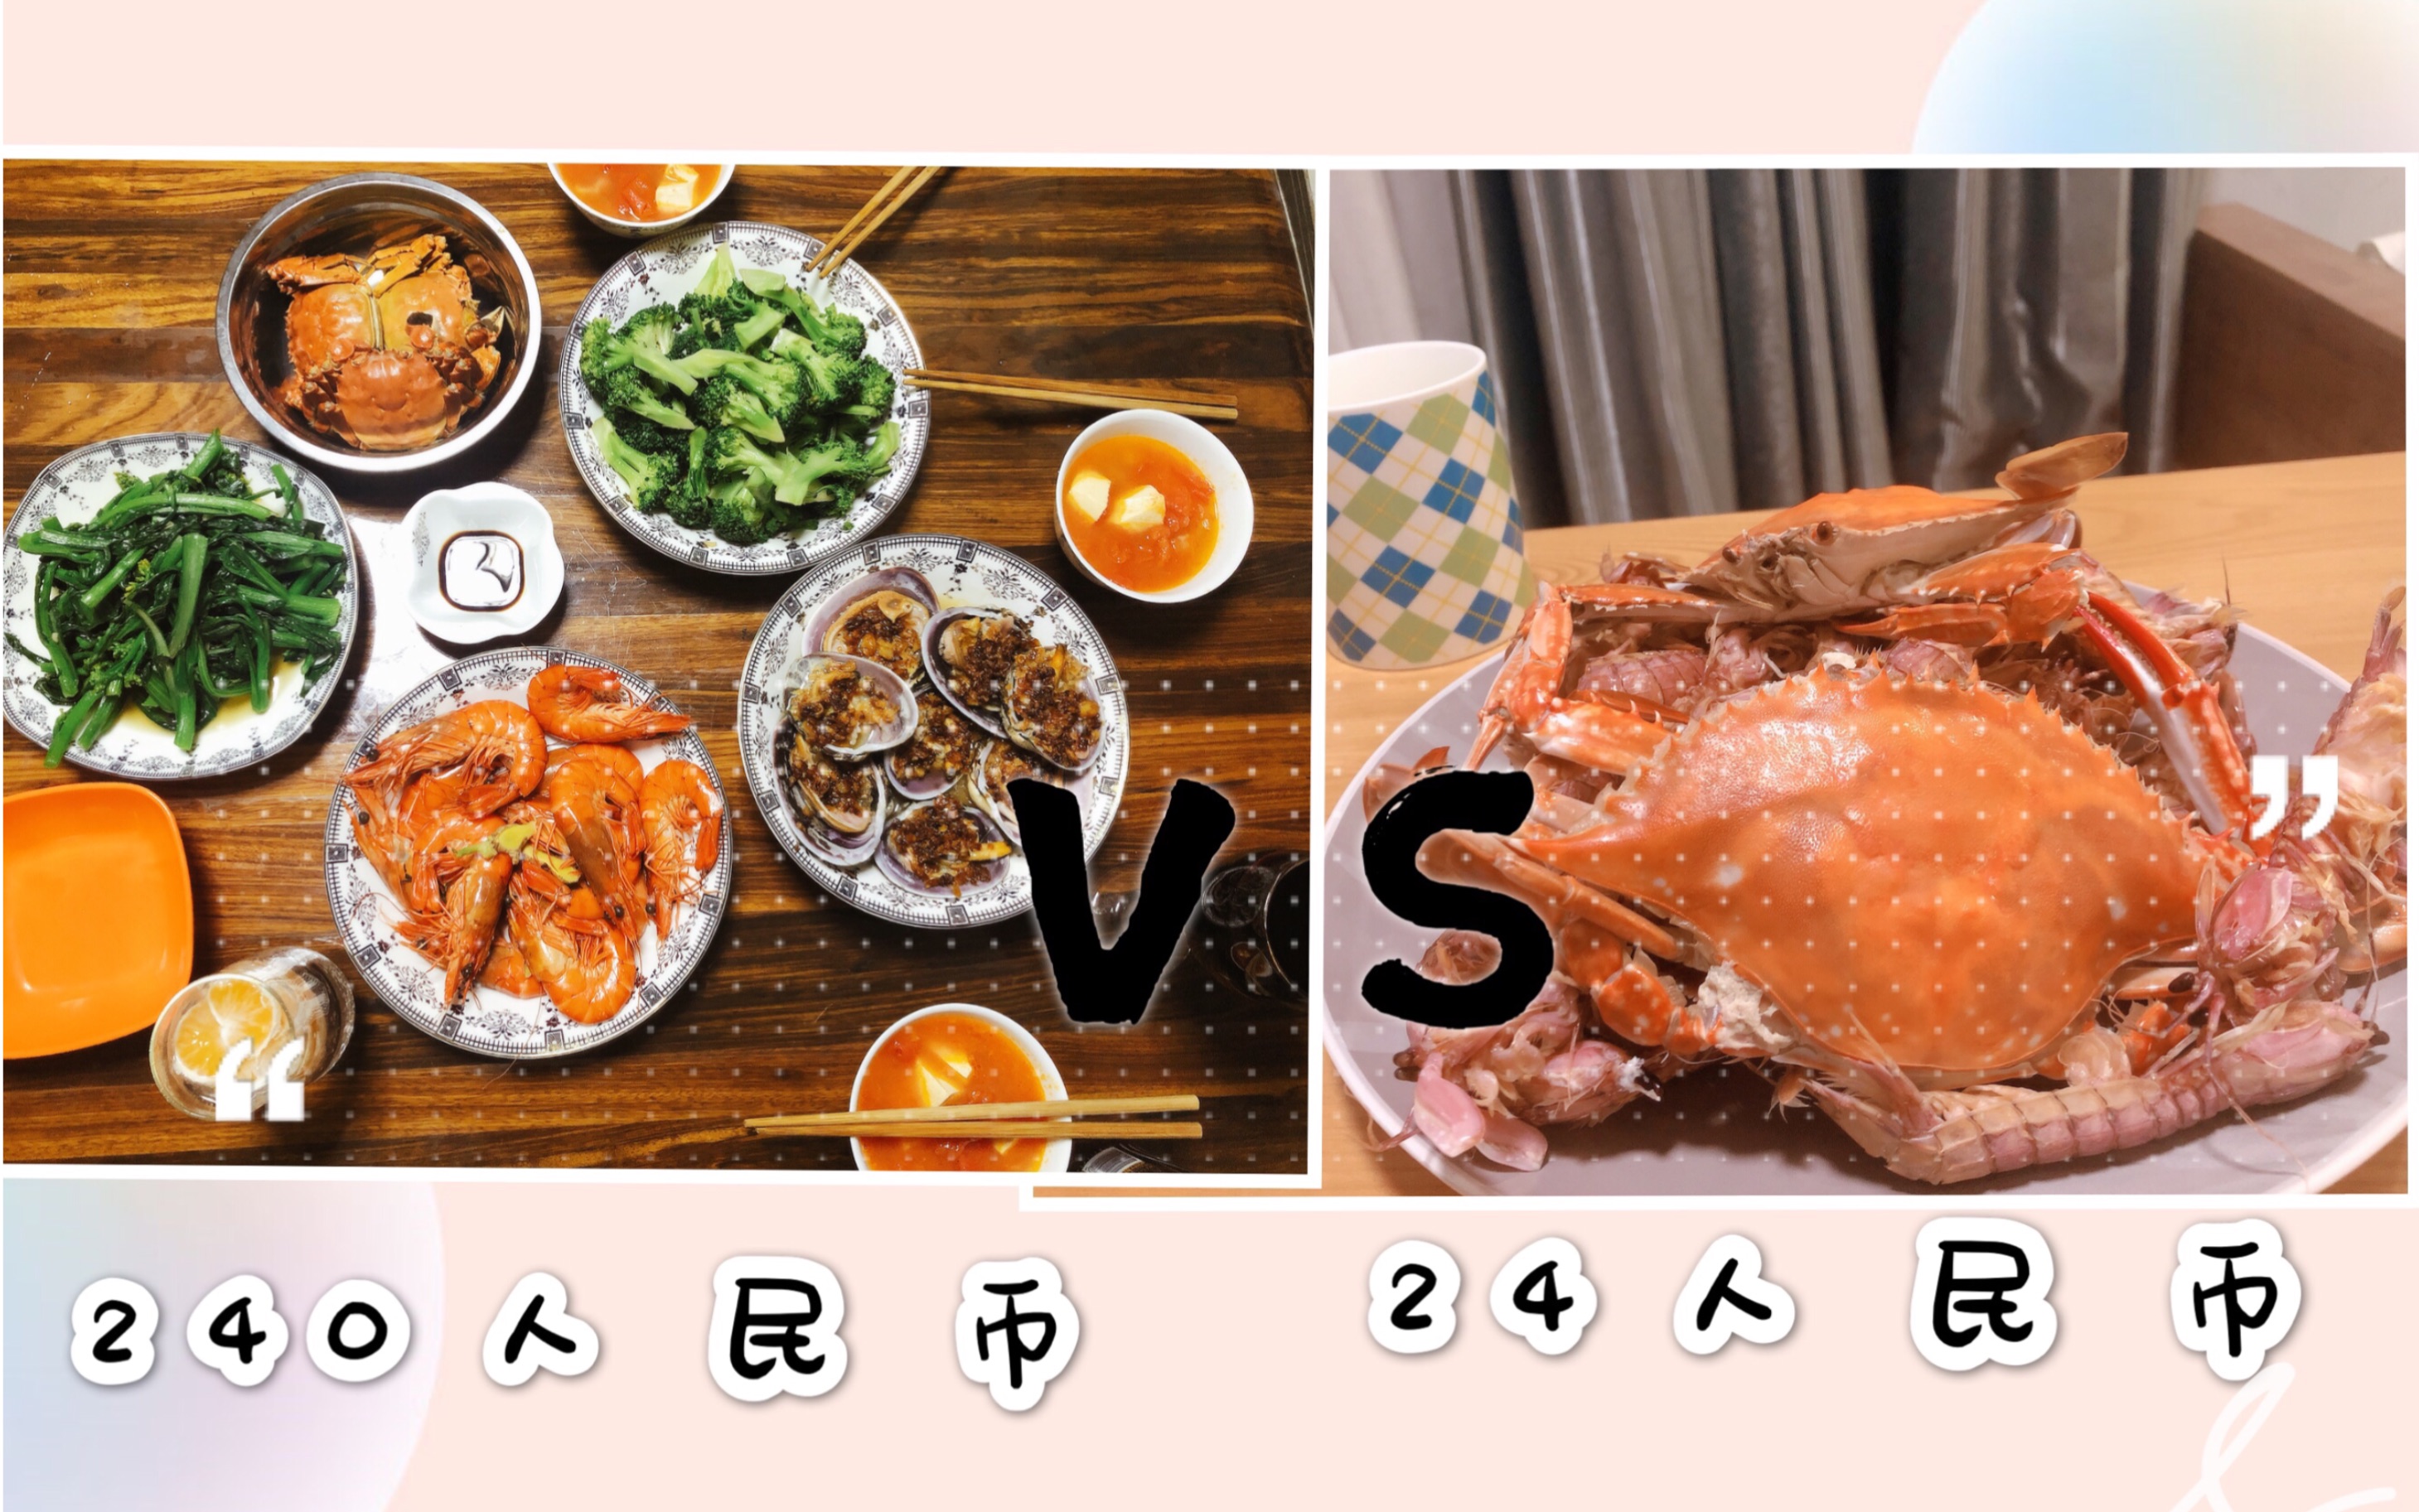 威海vlog.3 | 美食篇 | 海鲜&韩餐为主